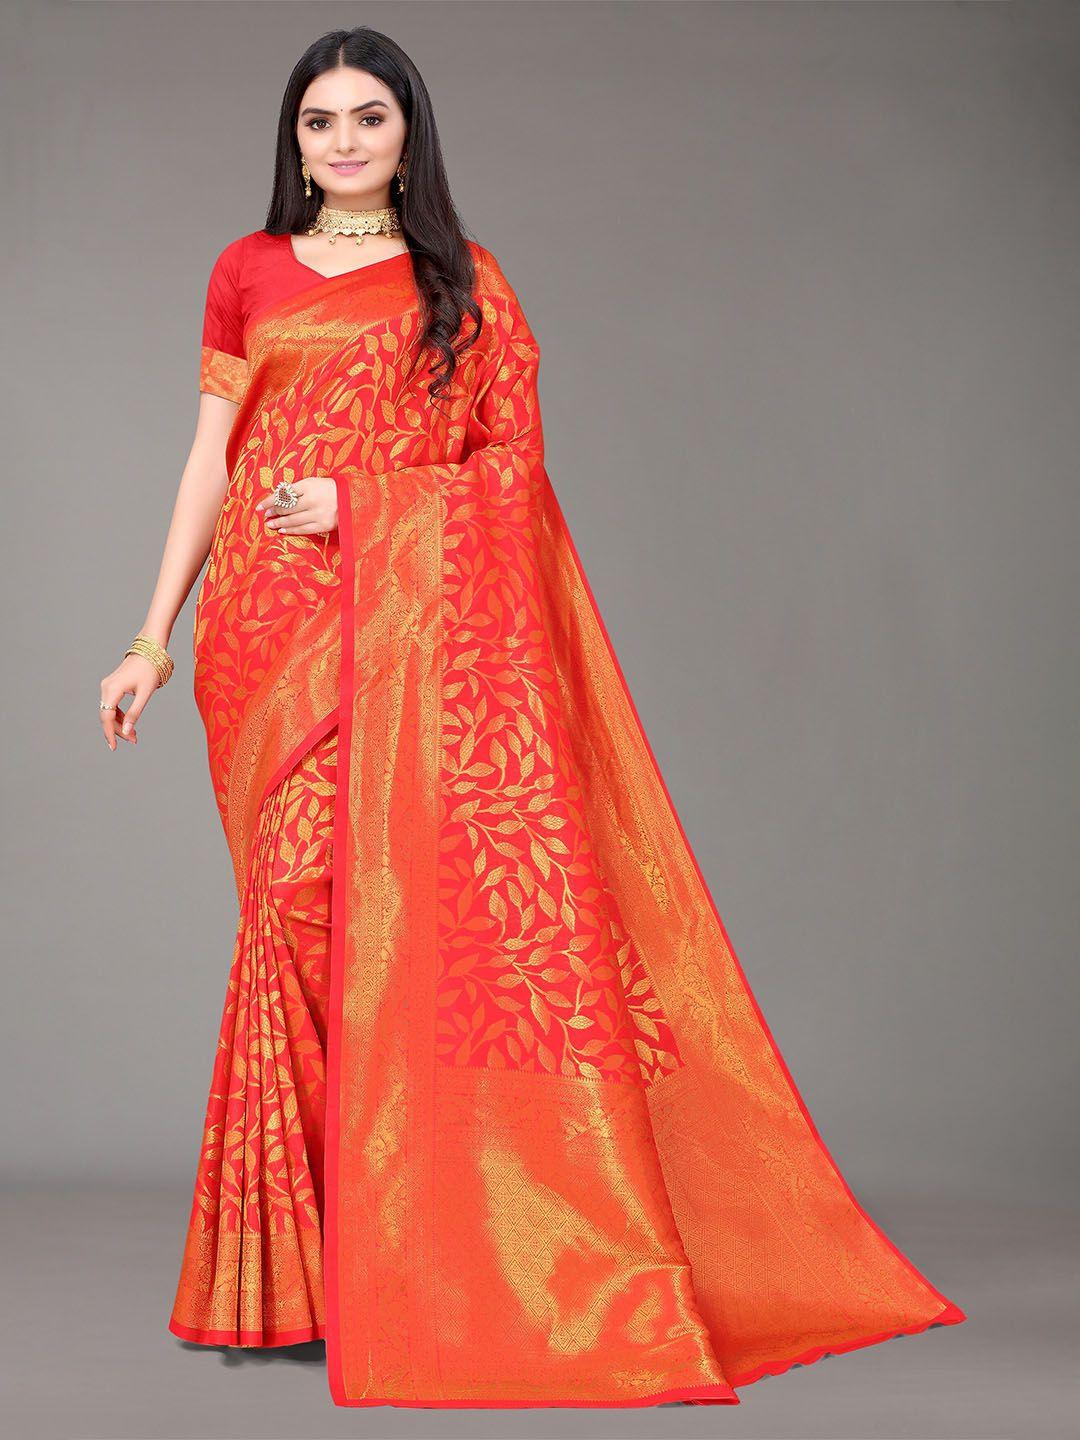 nimayaa red & gold-toned floral zari silk blend kanjeevaram saree